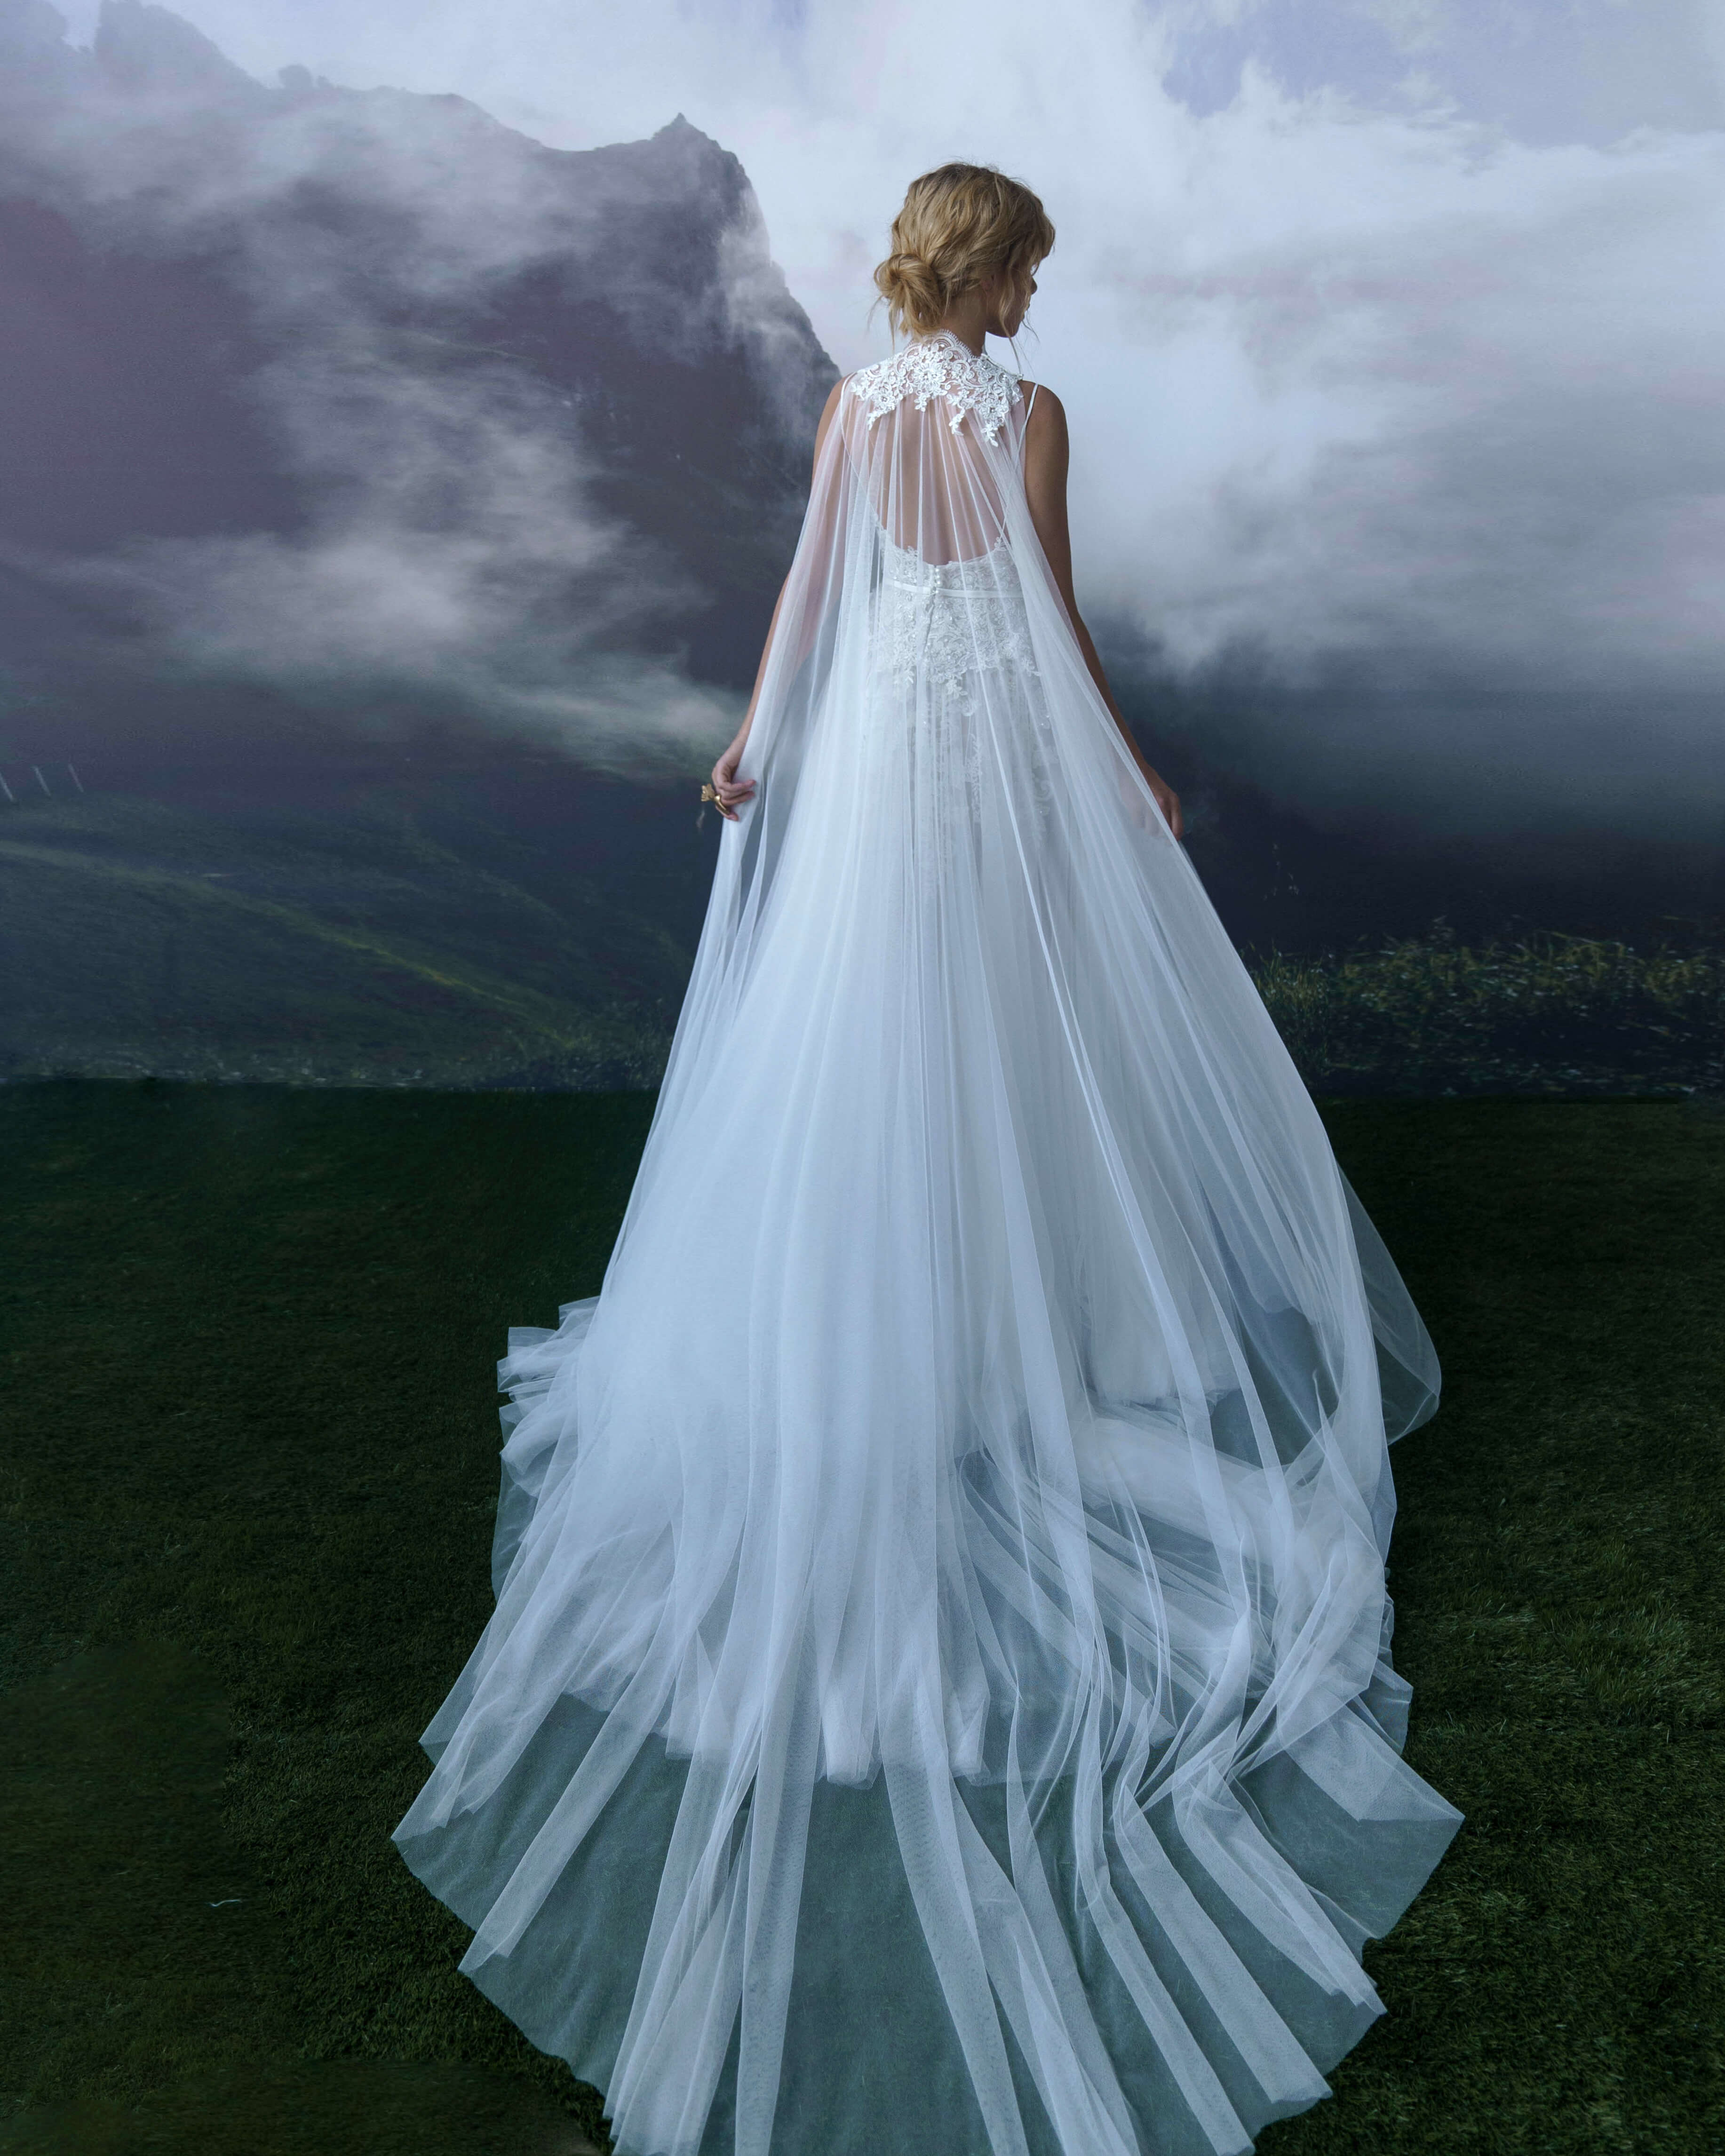 Купить свадебное платье «Моник» Бламмо Биамо из коллекции Сказка 2022 года в салоне «Мэри Трюфель»